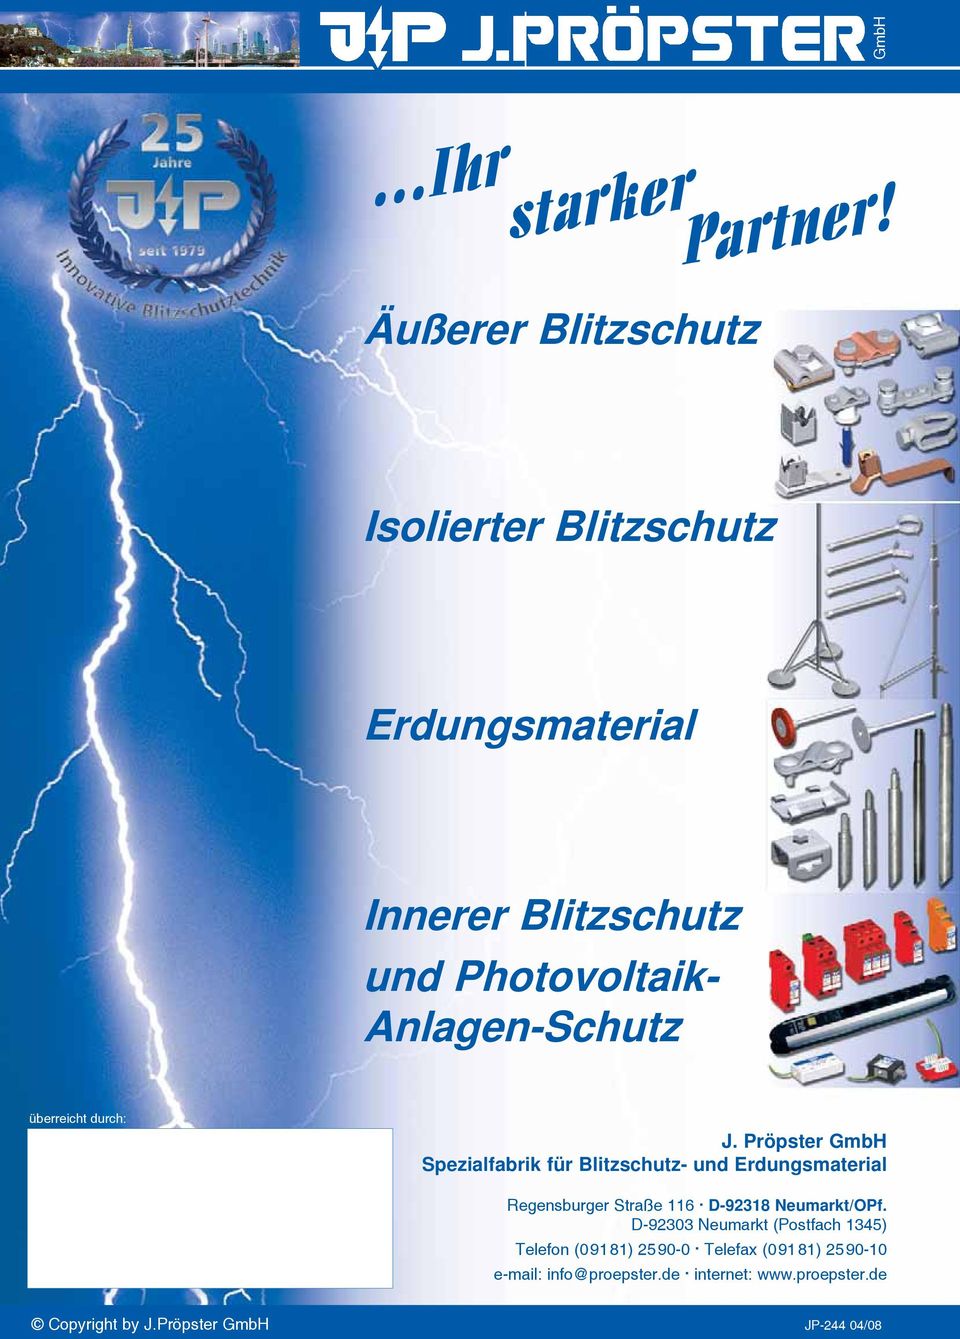 überreicht durch: J. Pröpster GmbH Spezialfabrik für Blitzschutz- und Erdungsmaterial Regensburger Straße 116.